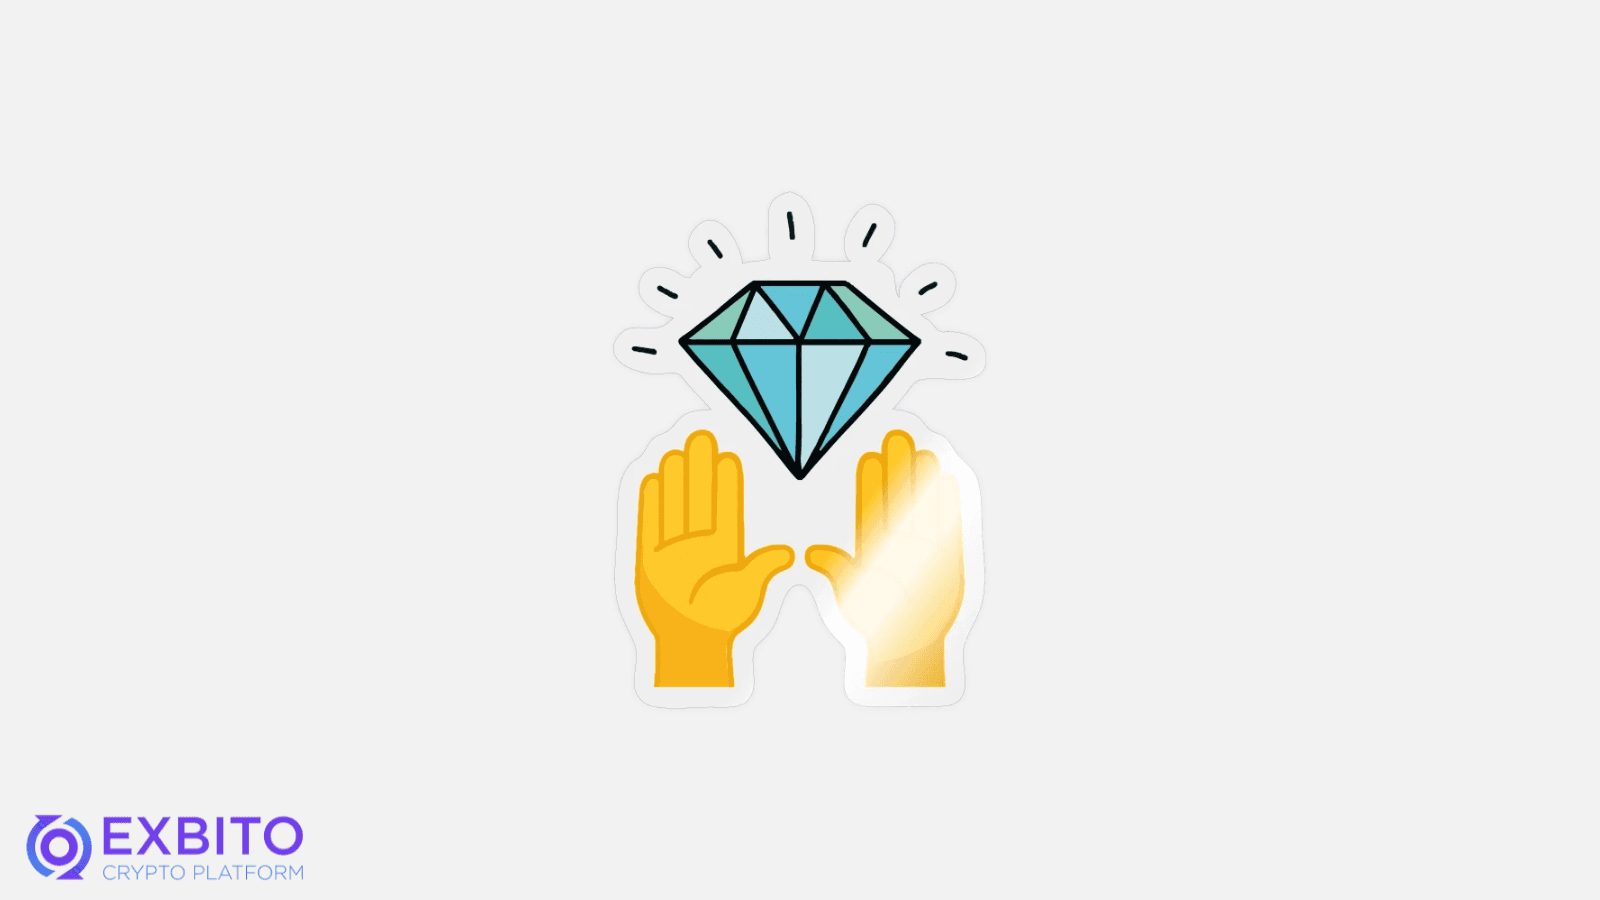 چگونه تشخیص دهیم دست الماسی (Diamond Hands) هستیم یا نه؟